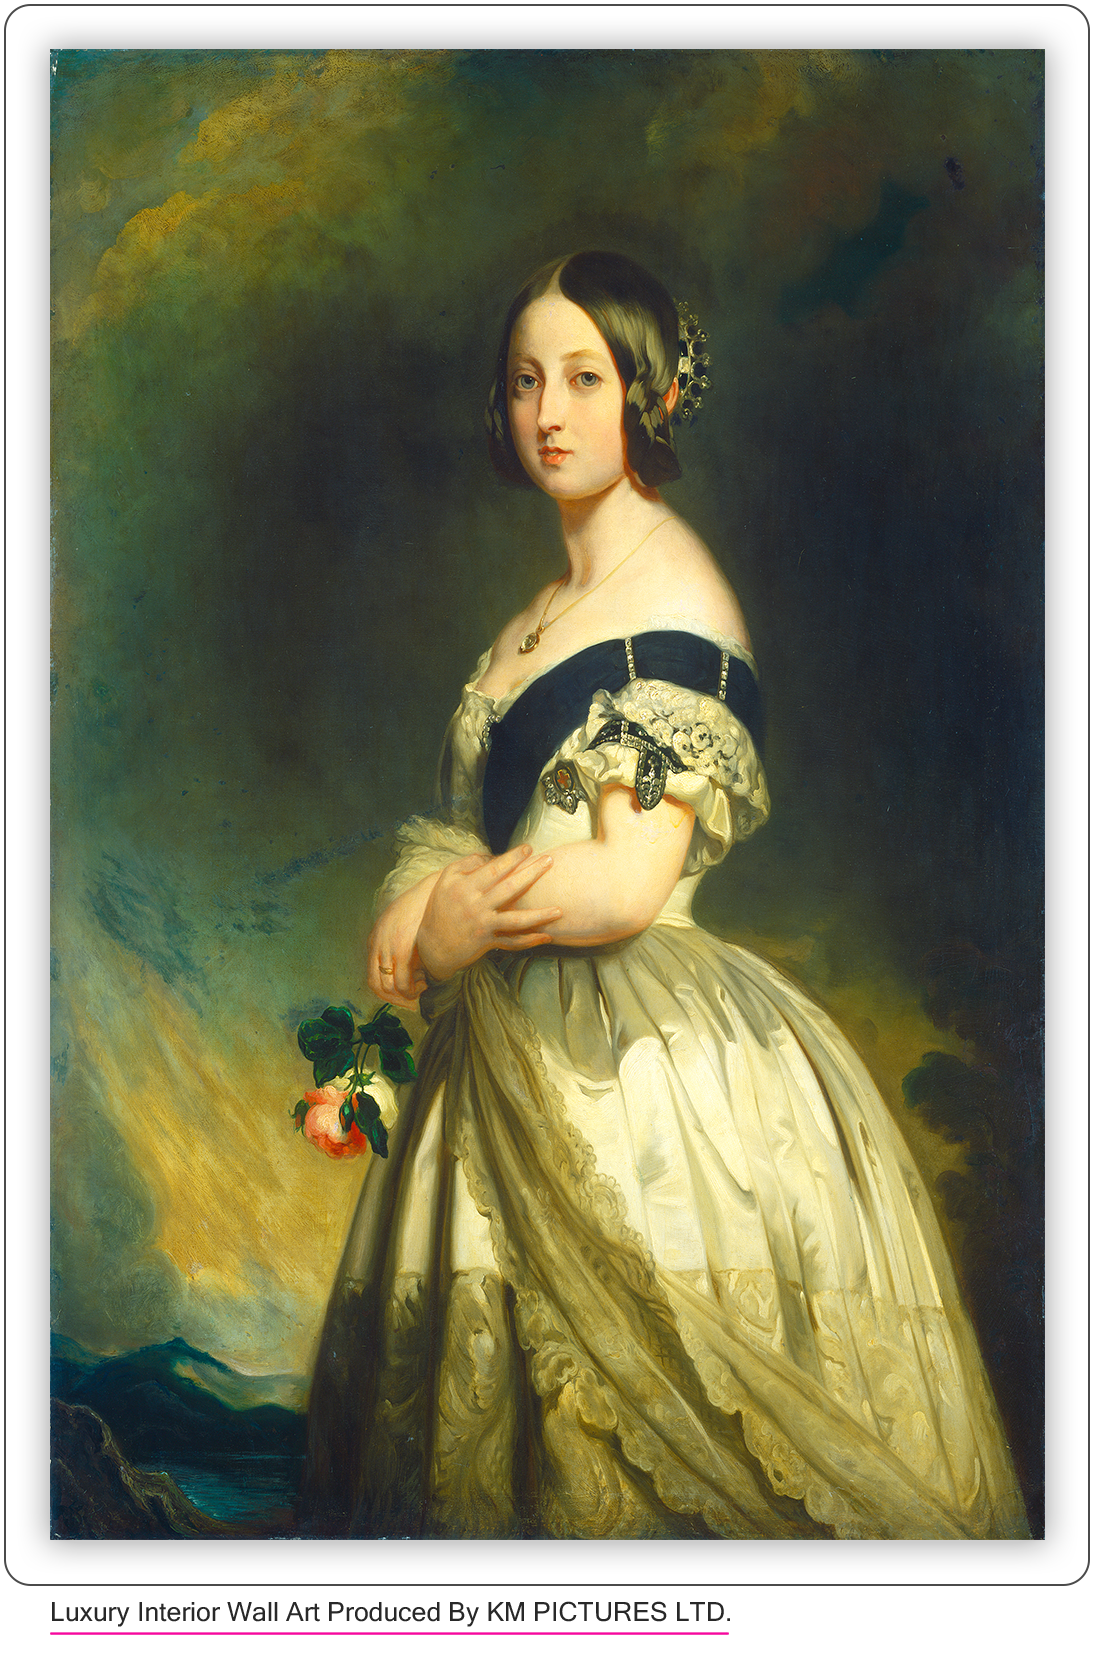 Queen Victoria, c. 1843